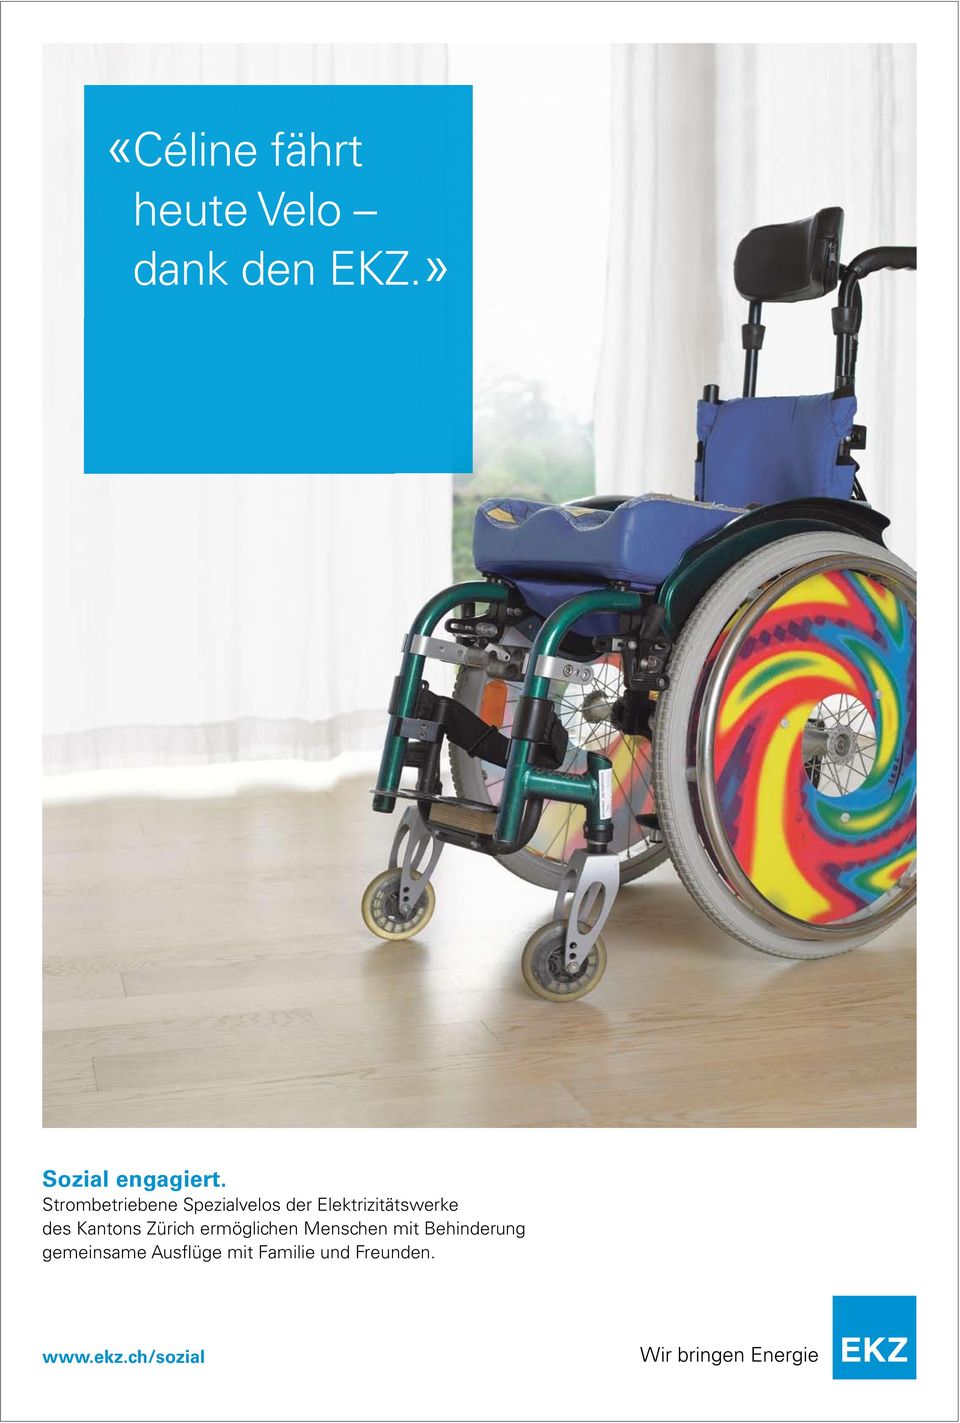 Kantons Zürich ermöglichen Menschen mit Behinderung